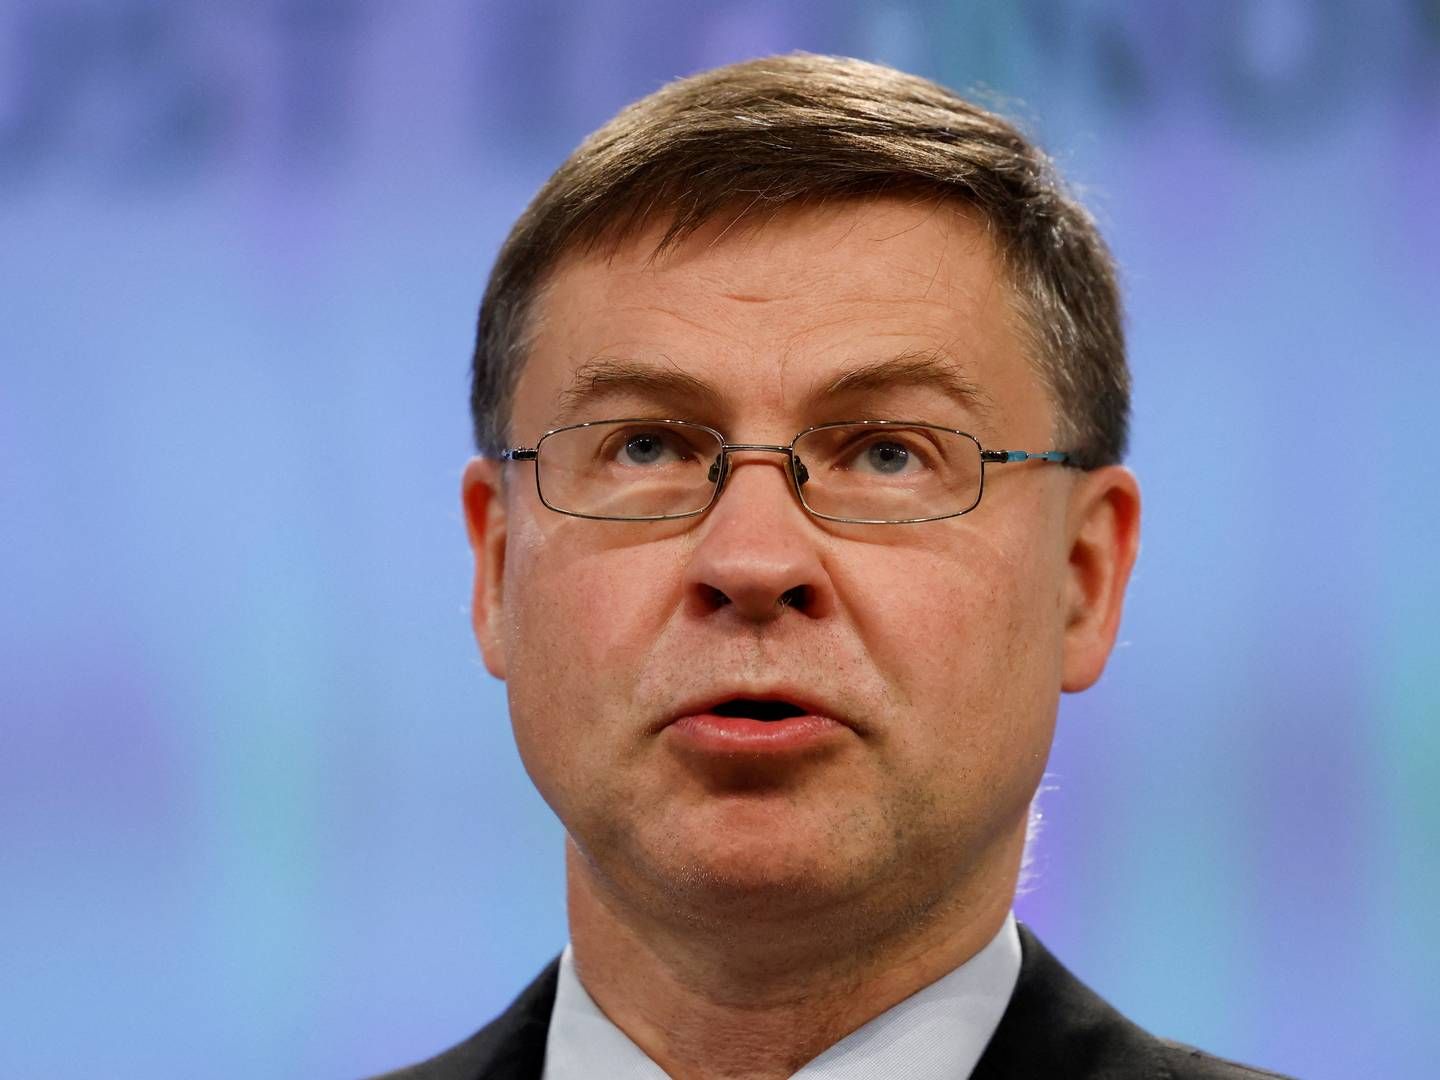 Europa-kommissær Valdis Dombrovskis afholdt tirsdag pressemøde om en bæredygtig finansiel sektor. | Foto: Yves Herman